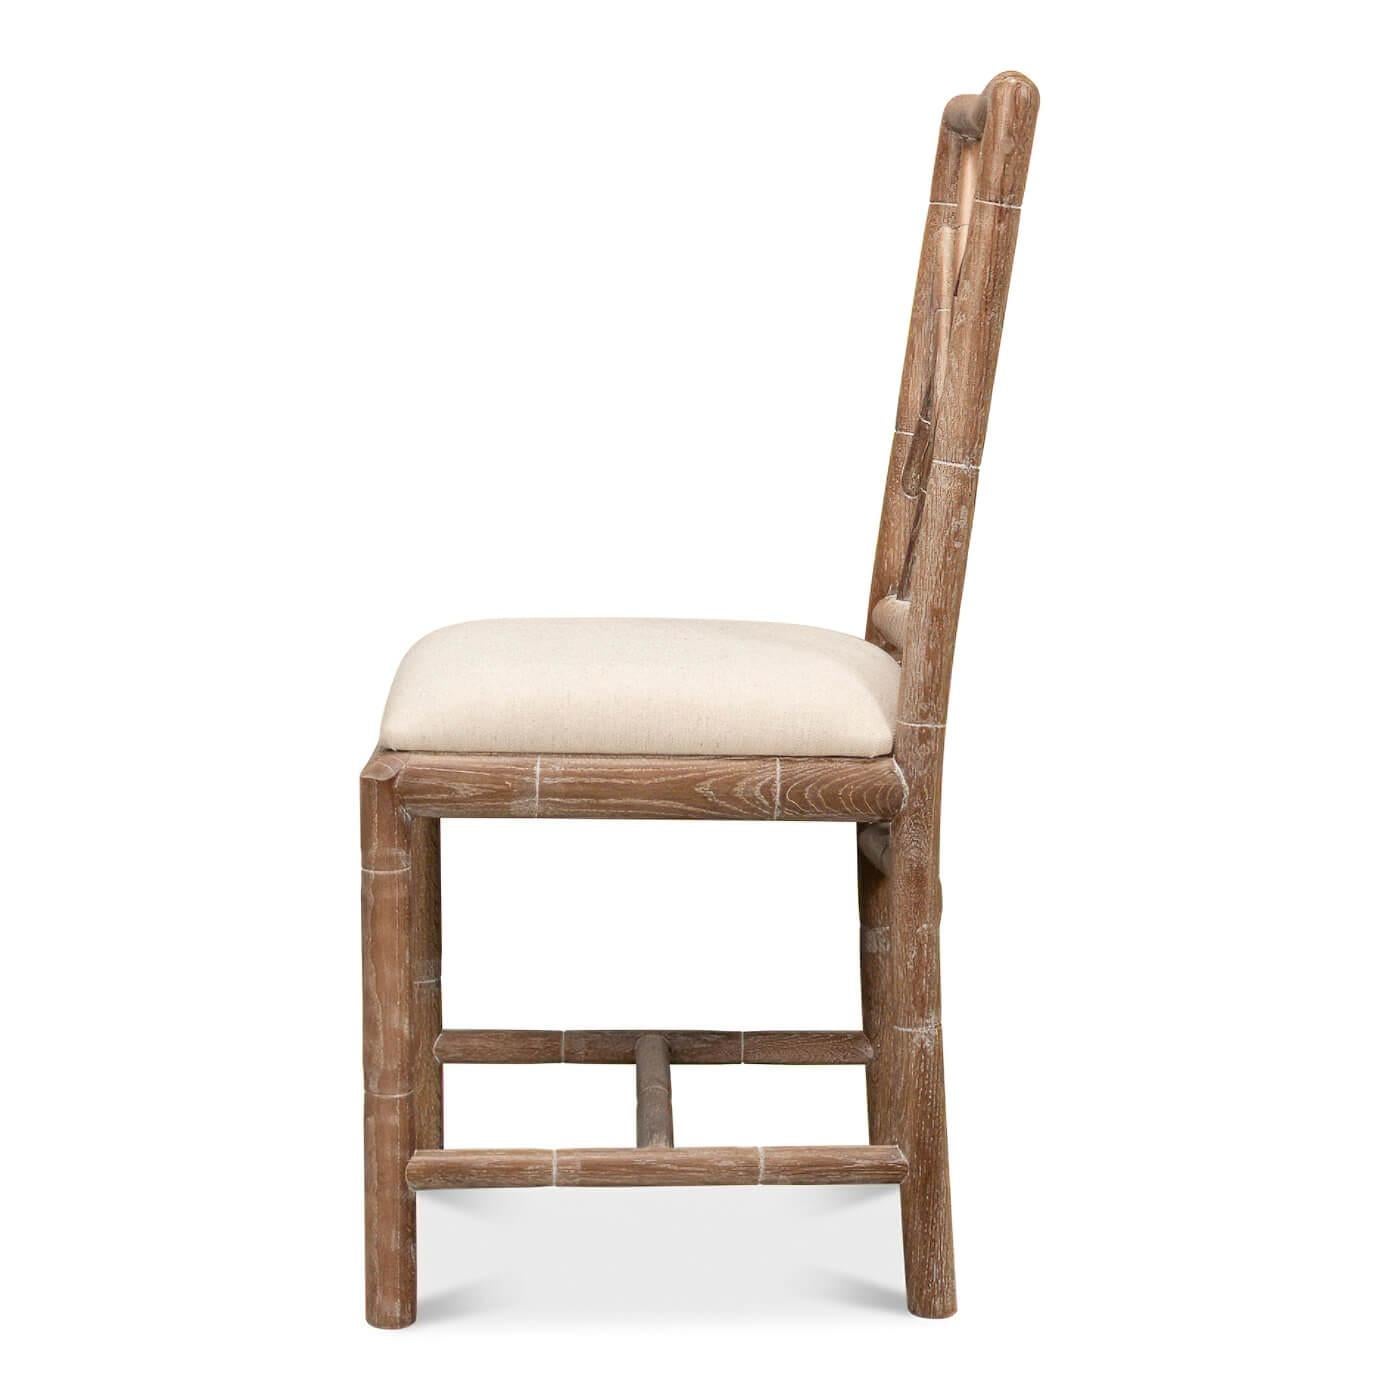 Ein Beistellstuhl aus Bambusimitat im Regency-Stil. Dieser handgeschnitzte Stuhl mit Bambusimitat ist vom Design des Brighton Pavillons inspiriert. Abgebildet ist er in unserer weiß gekalkten Eichenausführung mit einem Sitz aus Leinen.